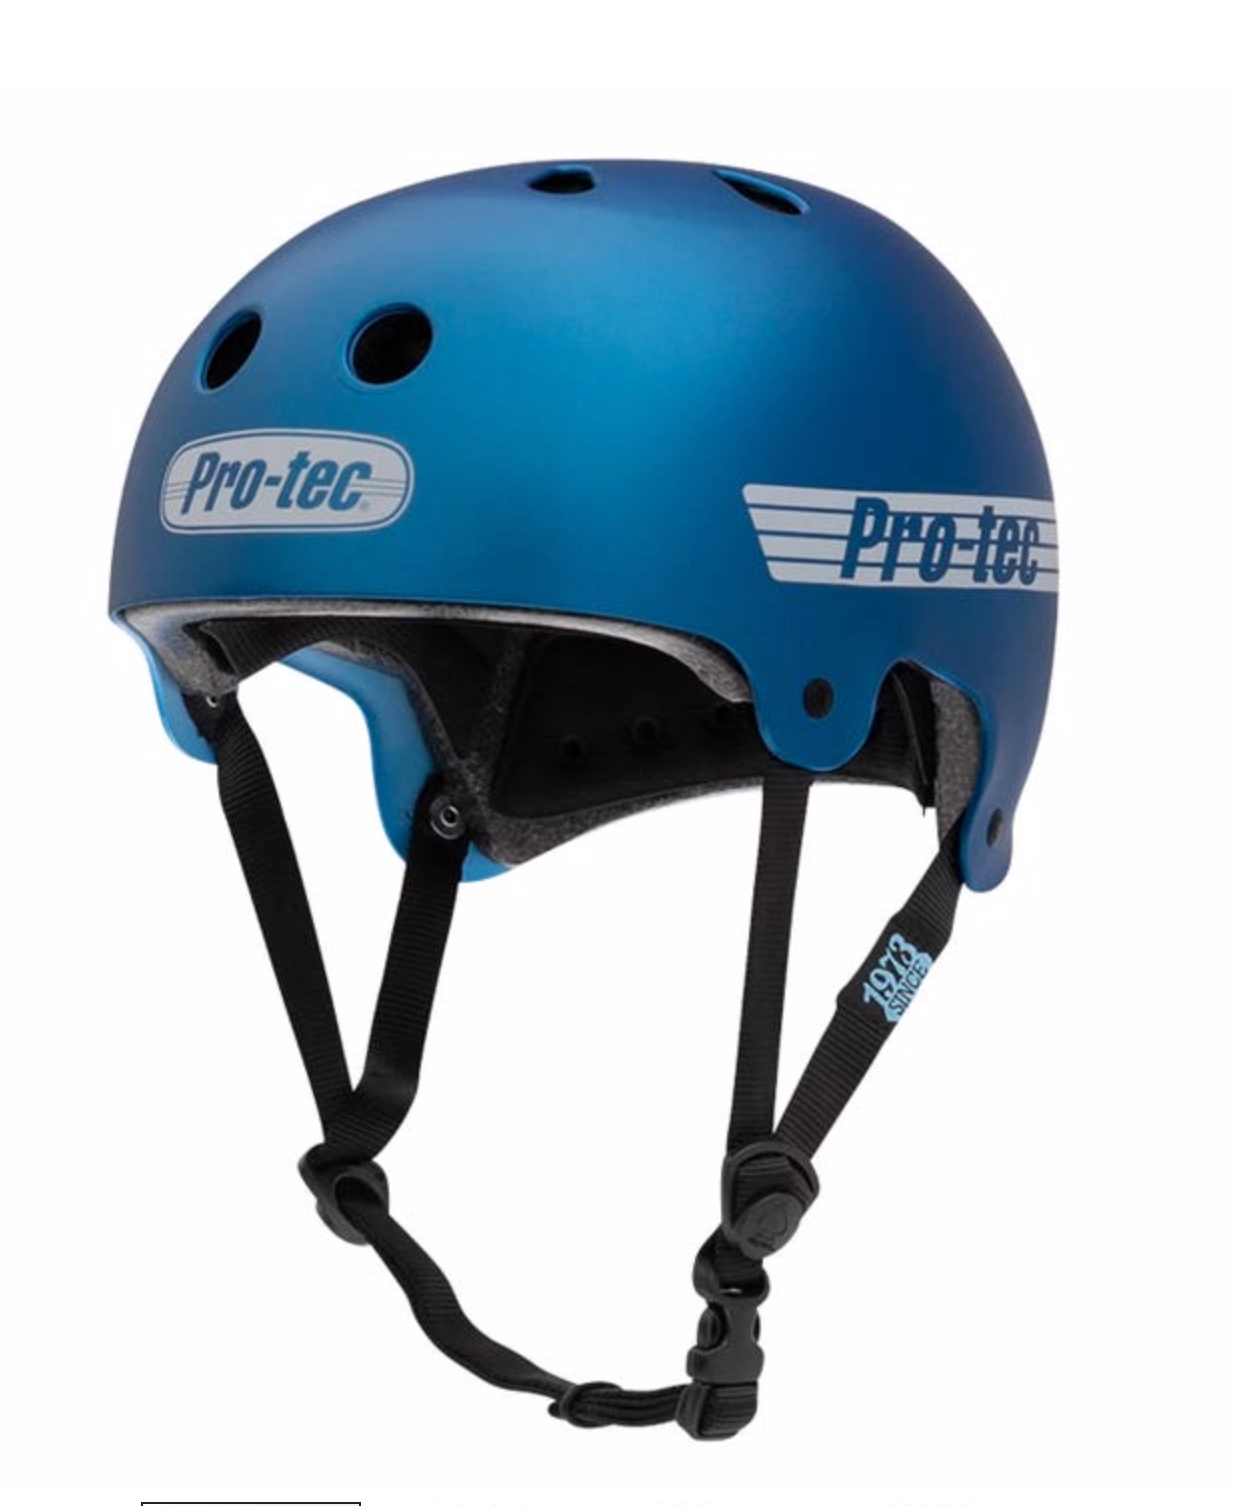 Pro-tec Old School Cert Helmet - Matte Metallic Blue